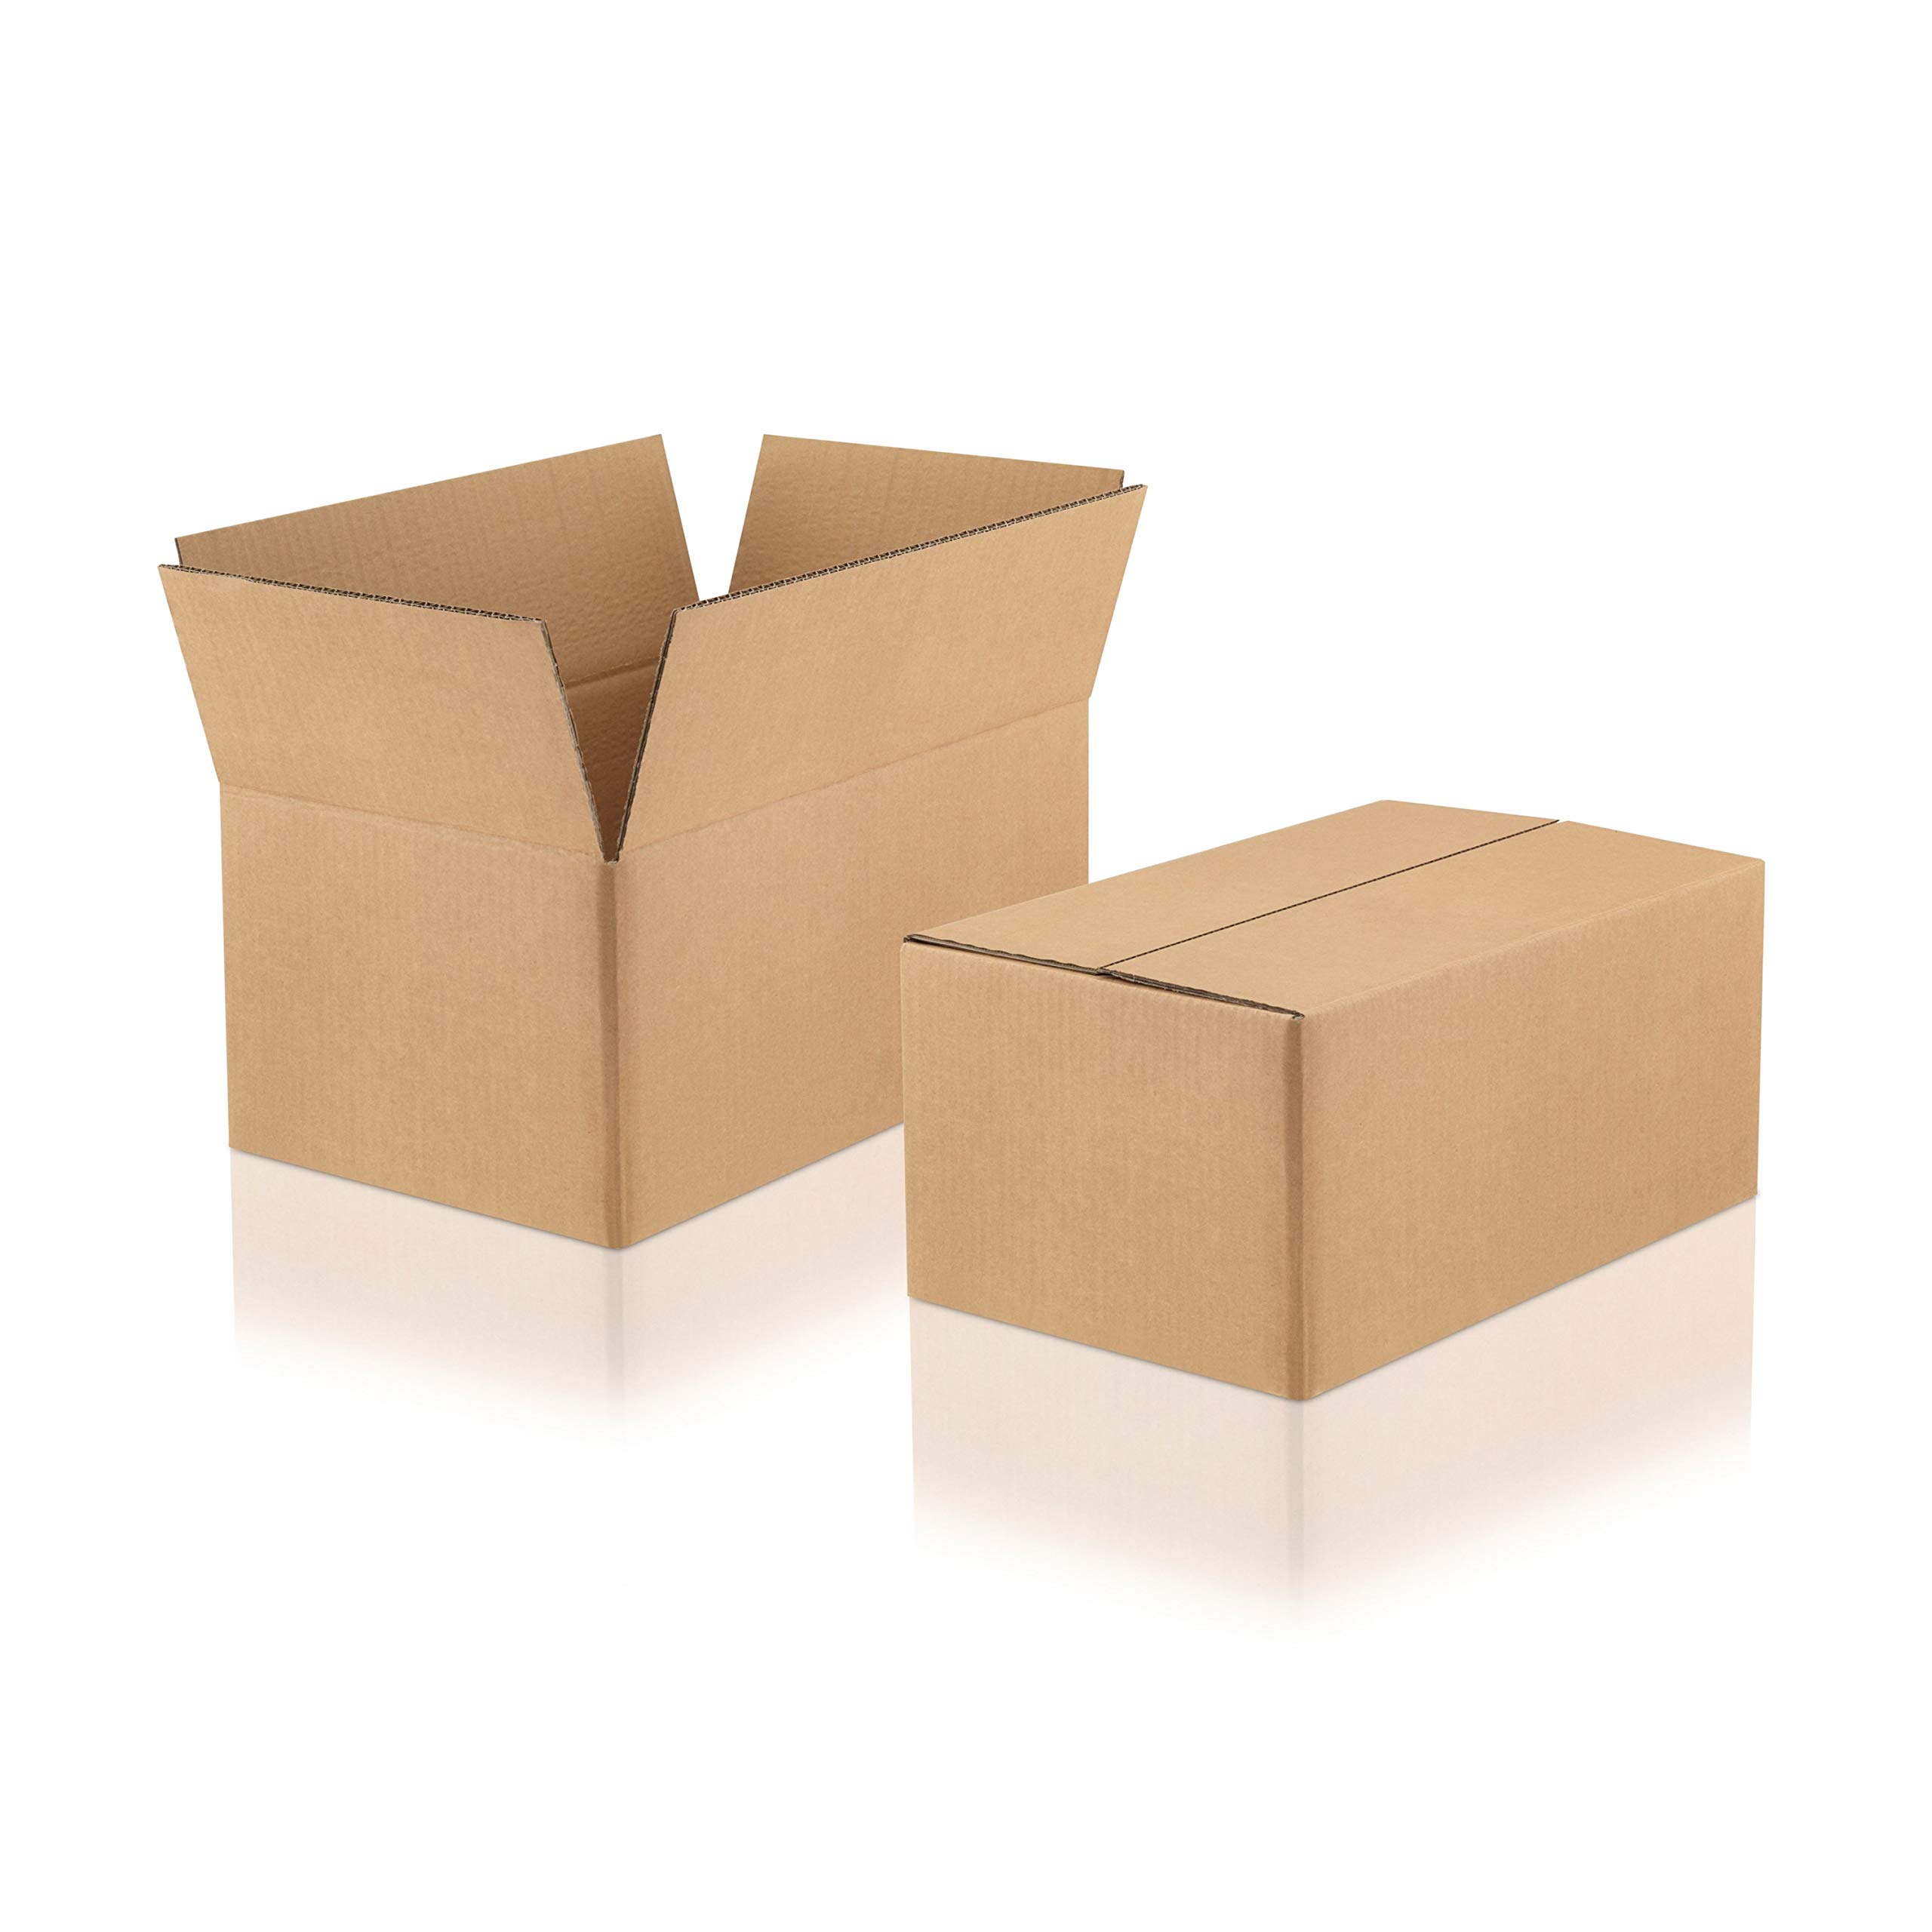 WPTrading - 20 Stück Versandkarton 2-wellig 260 x 220 x 200 mm Wellpappe (Nr. 2W-35) Braun - Shipping Cardboard Box für Warenversendung, Paket & Päckchen medium - Karton Versand Verpackung stark